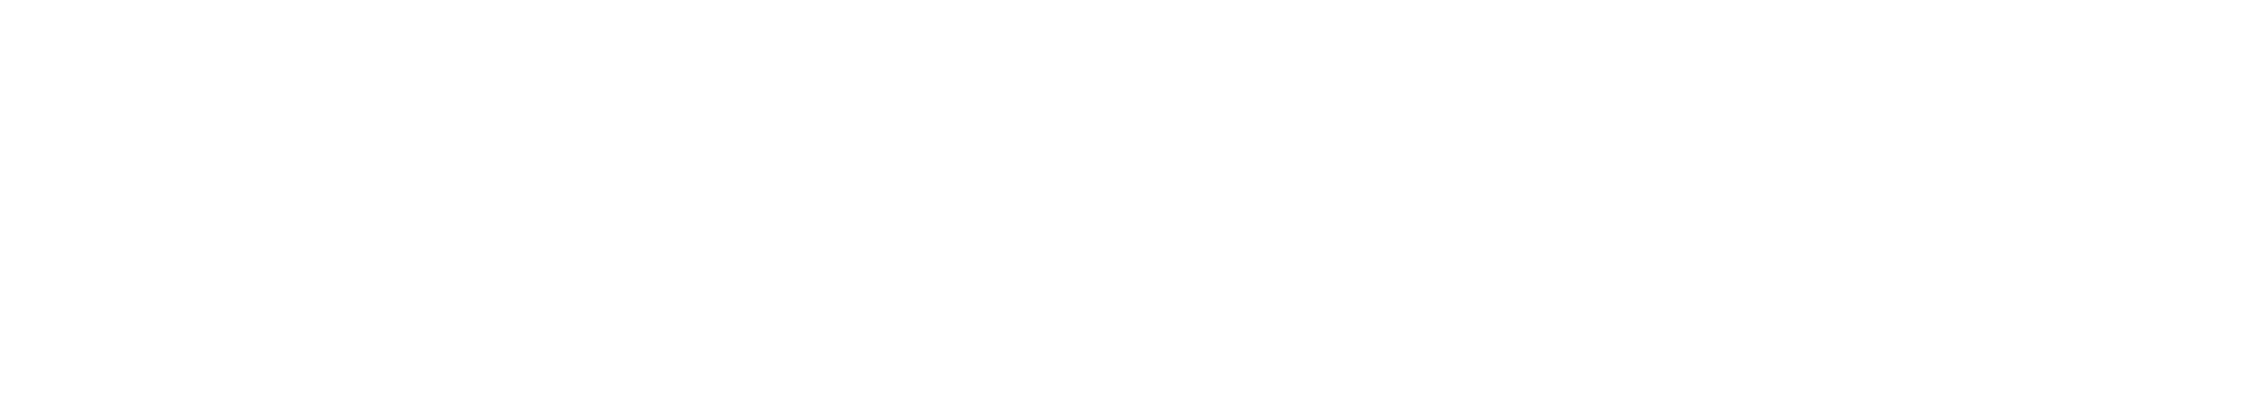 Rlaxx TV - Volty TV Distribution Partner